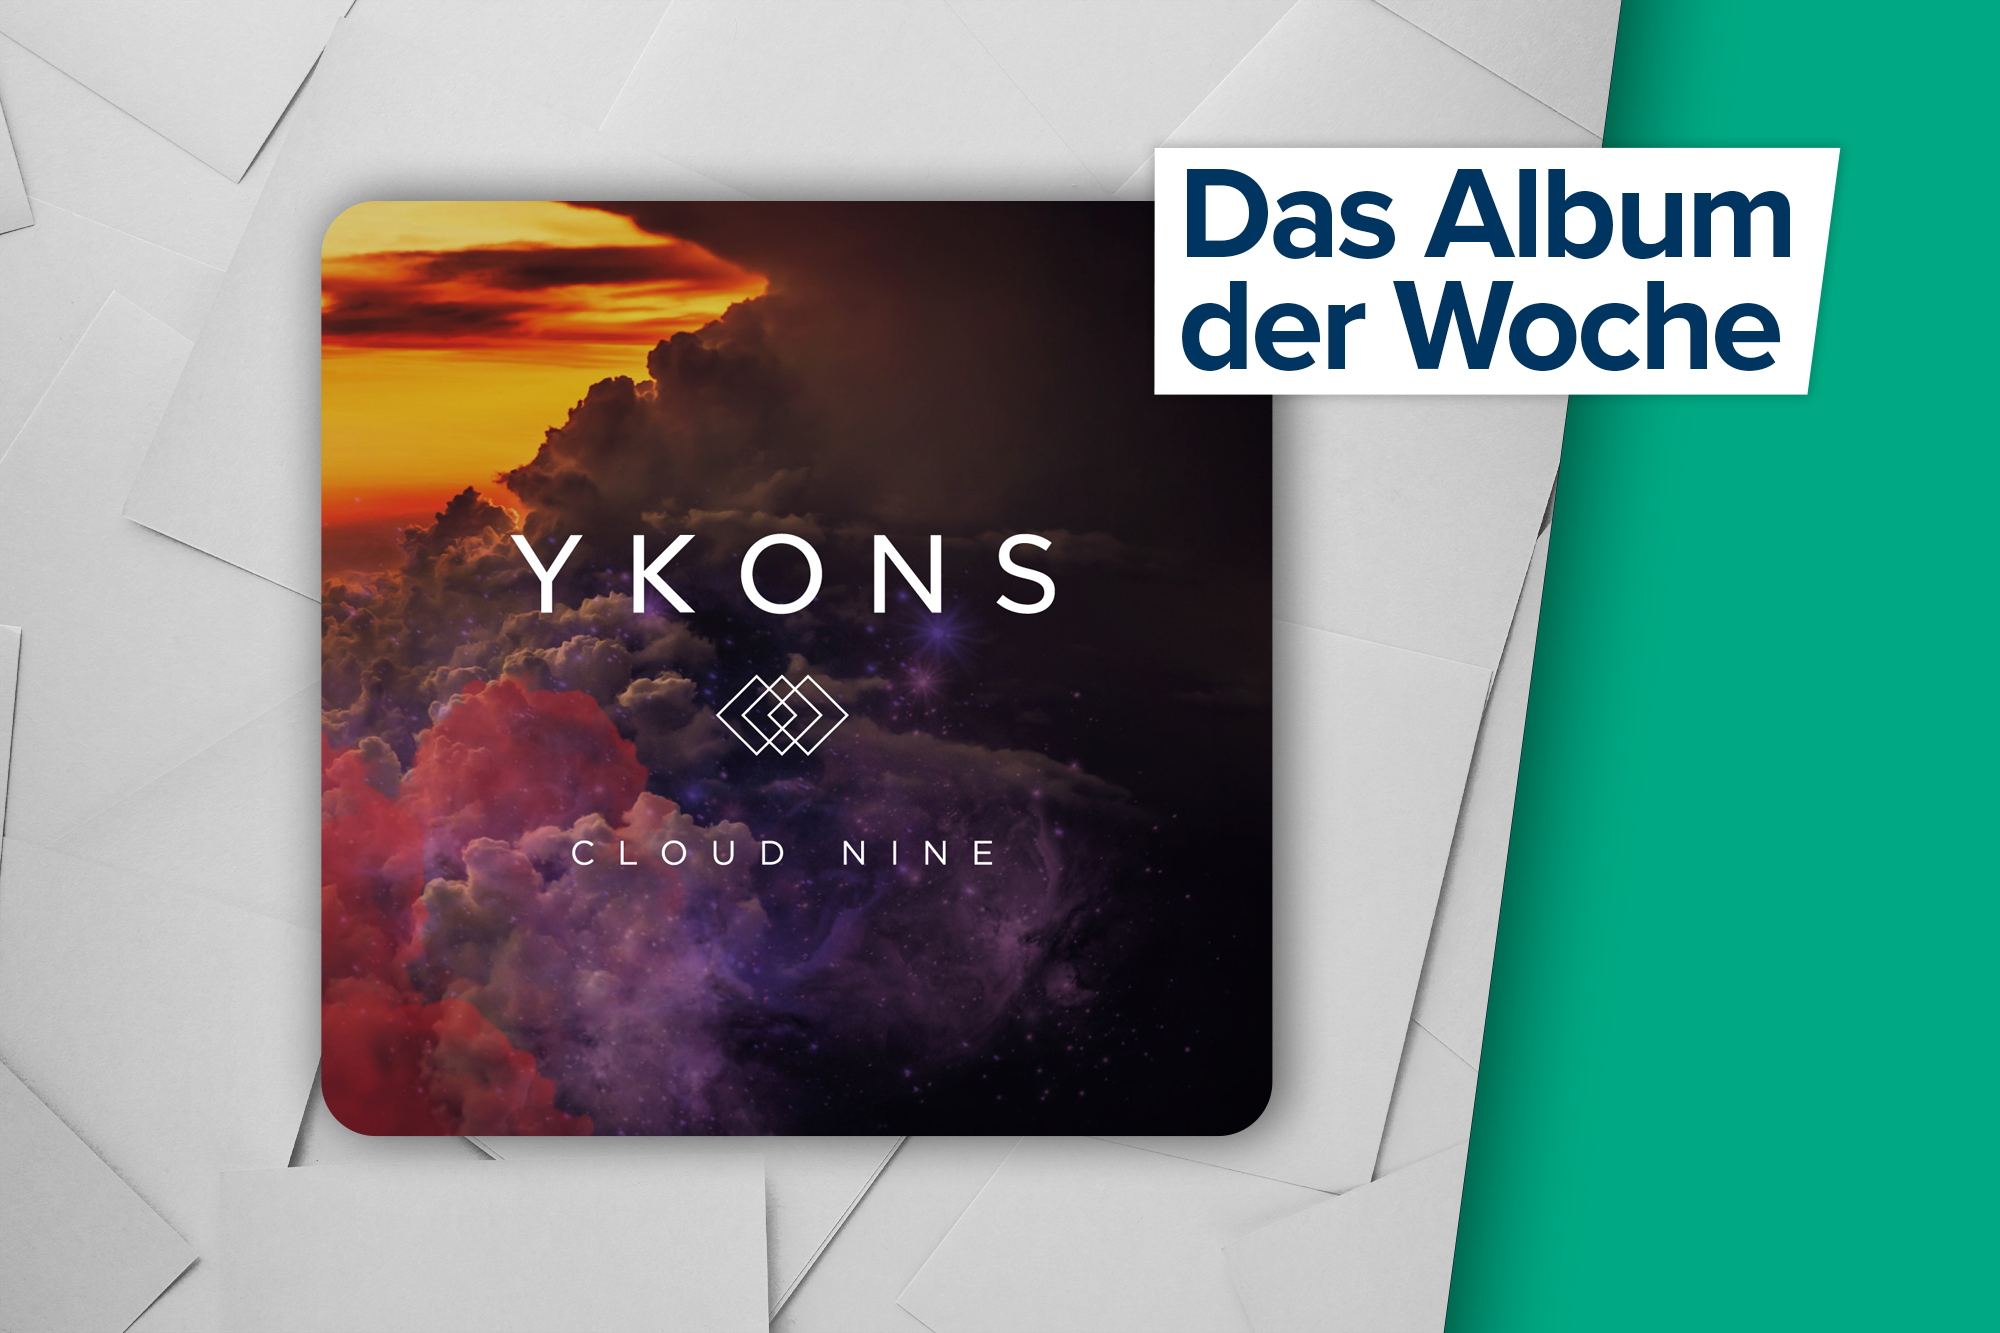 Das Album der Woche: "Cloud Nine" von Ykons